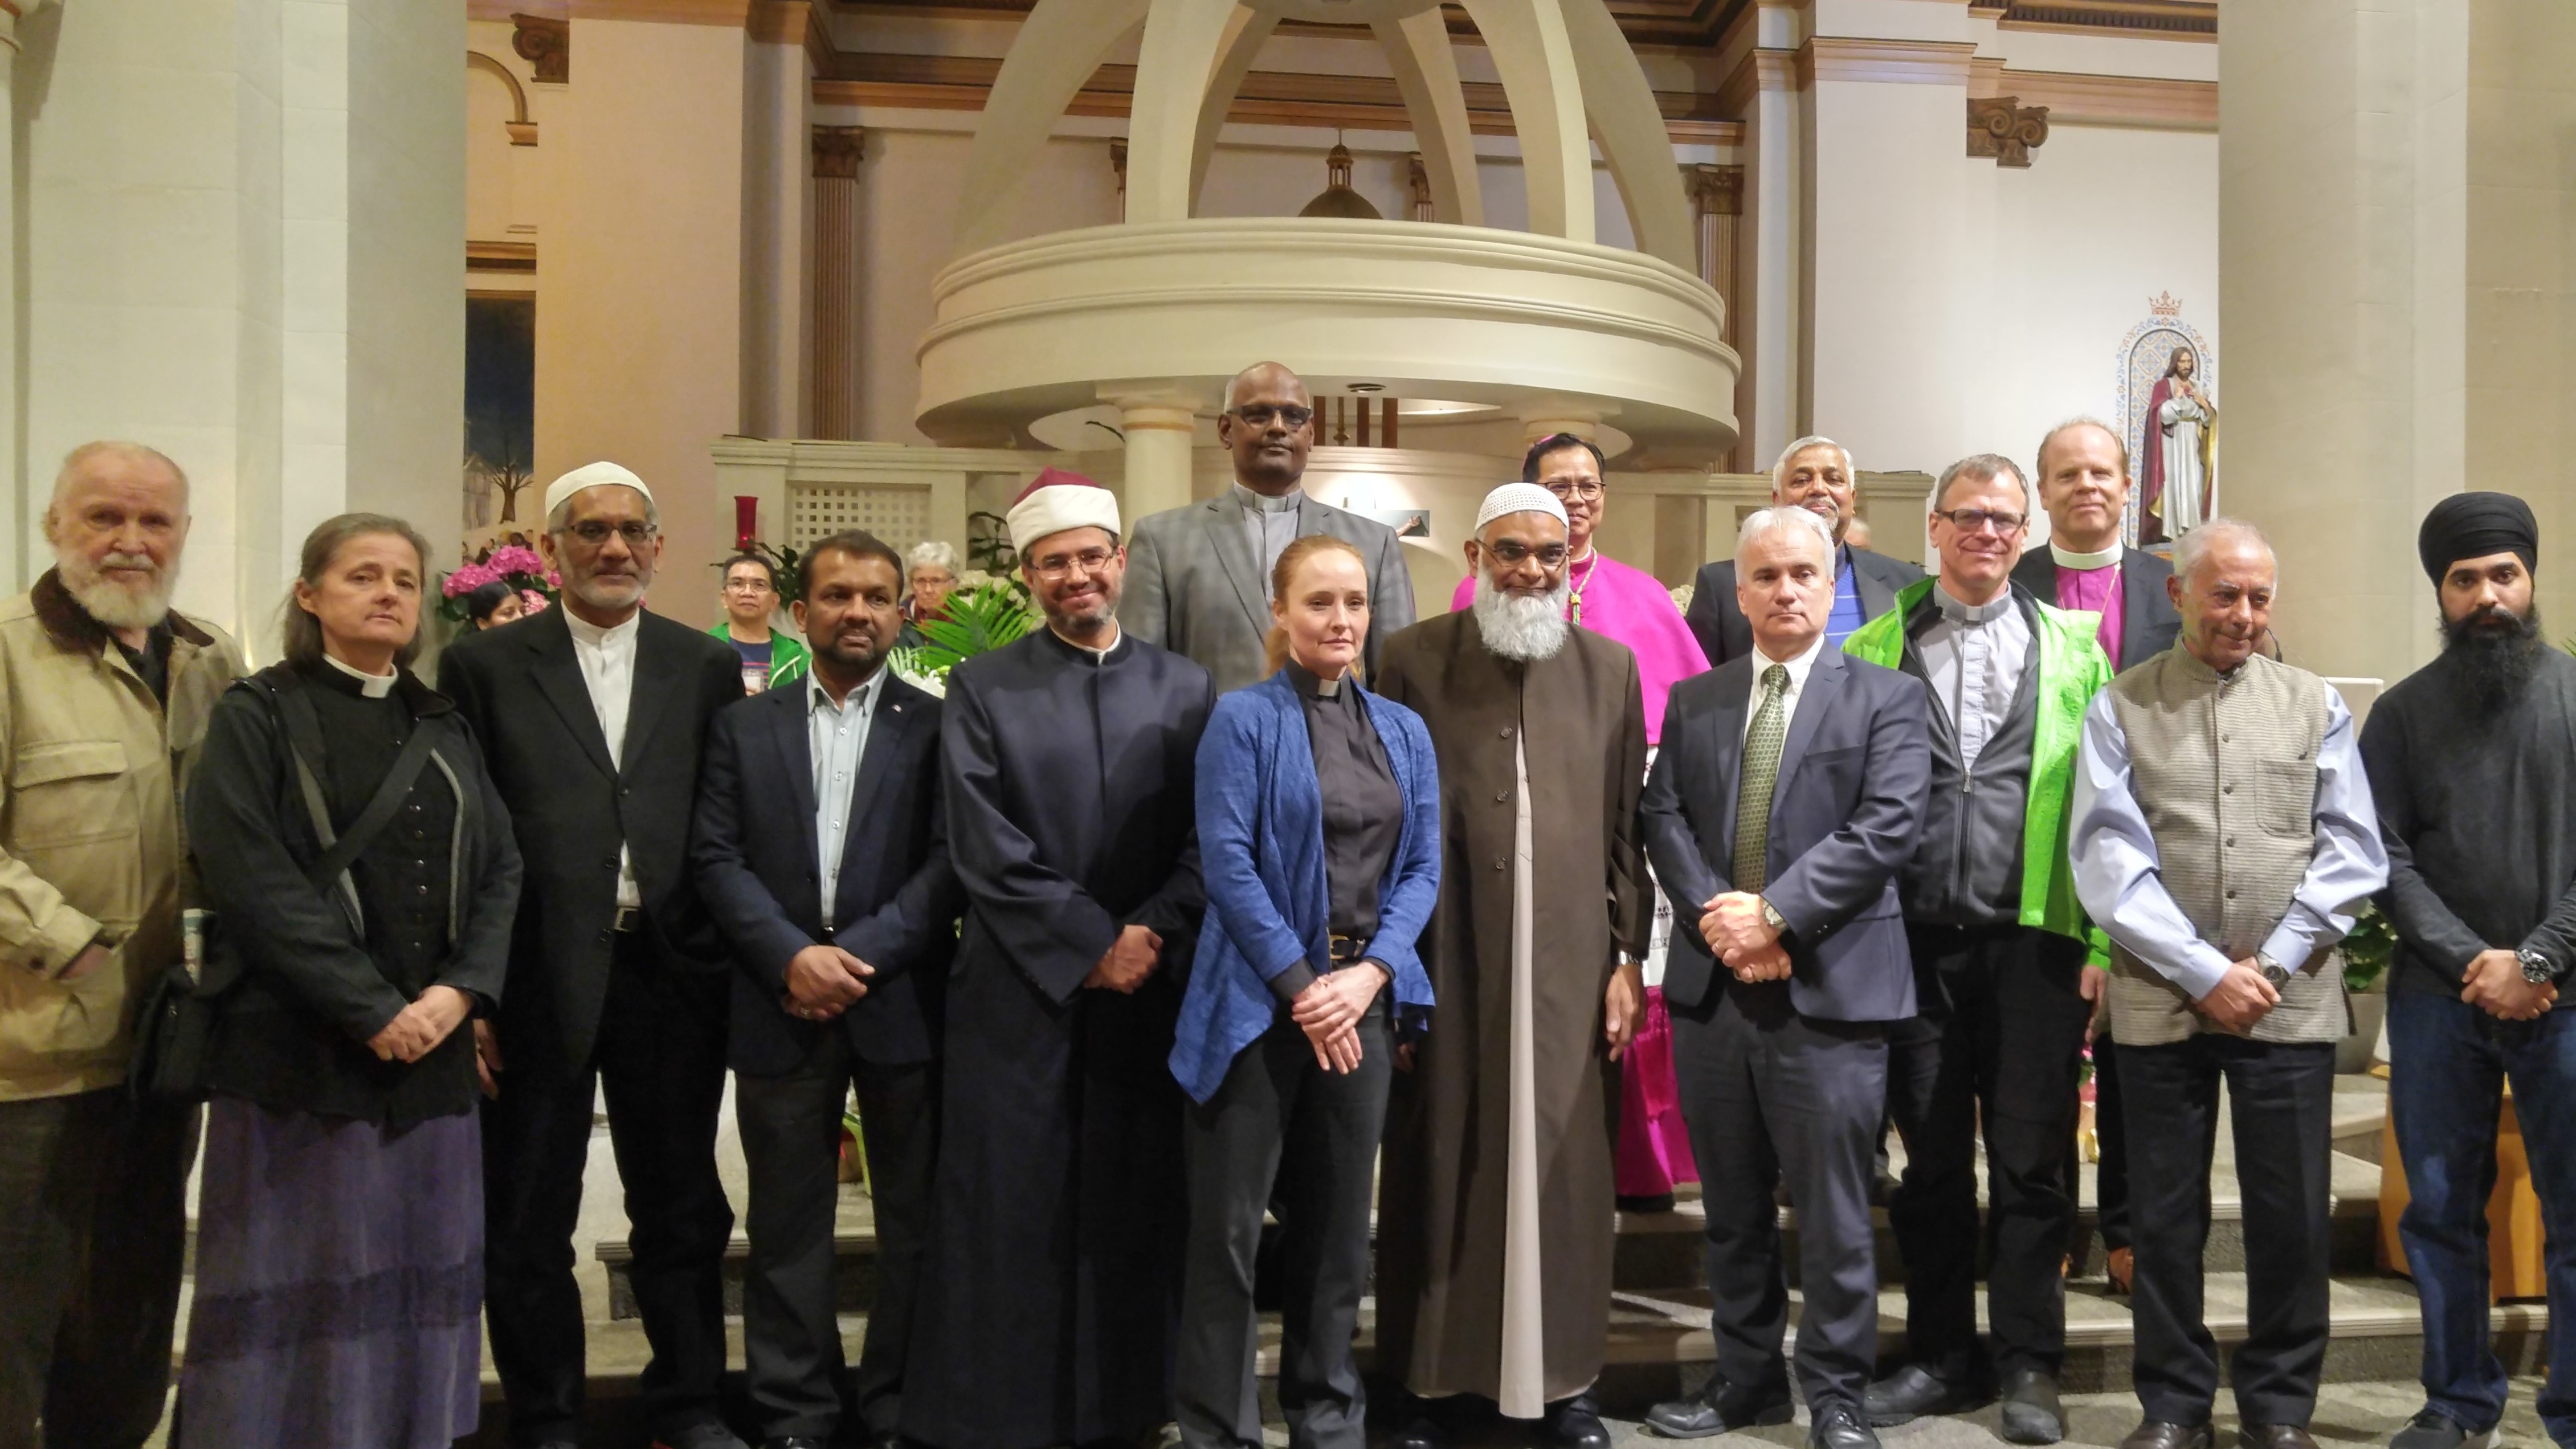 Photos of Interreligious Leaders